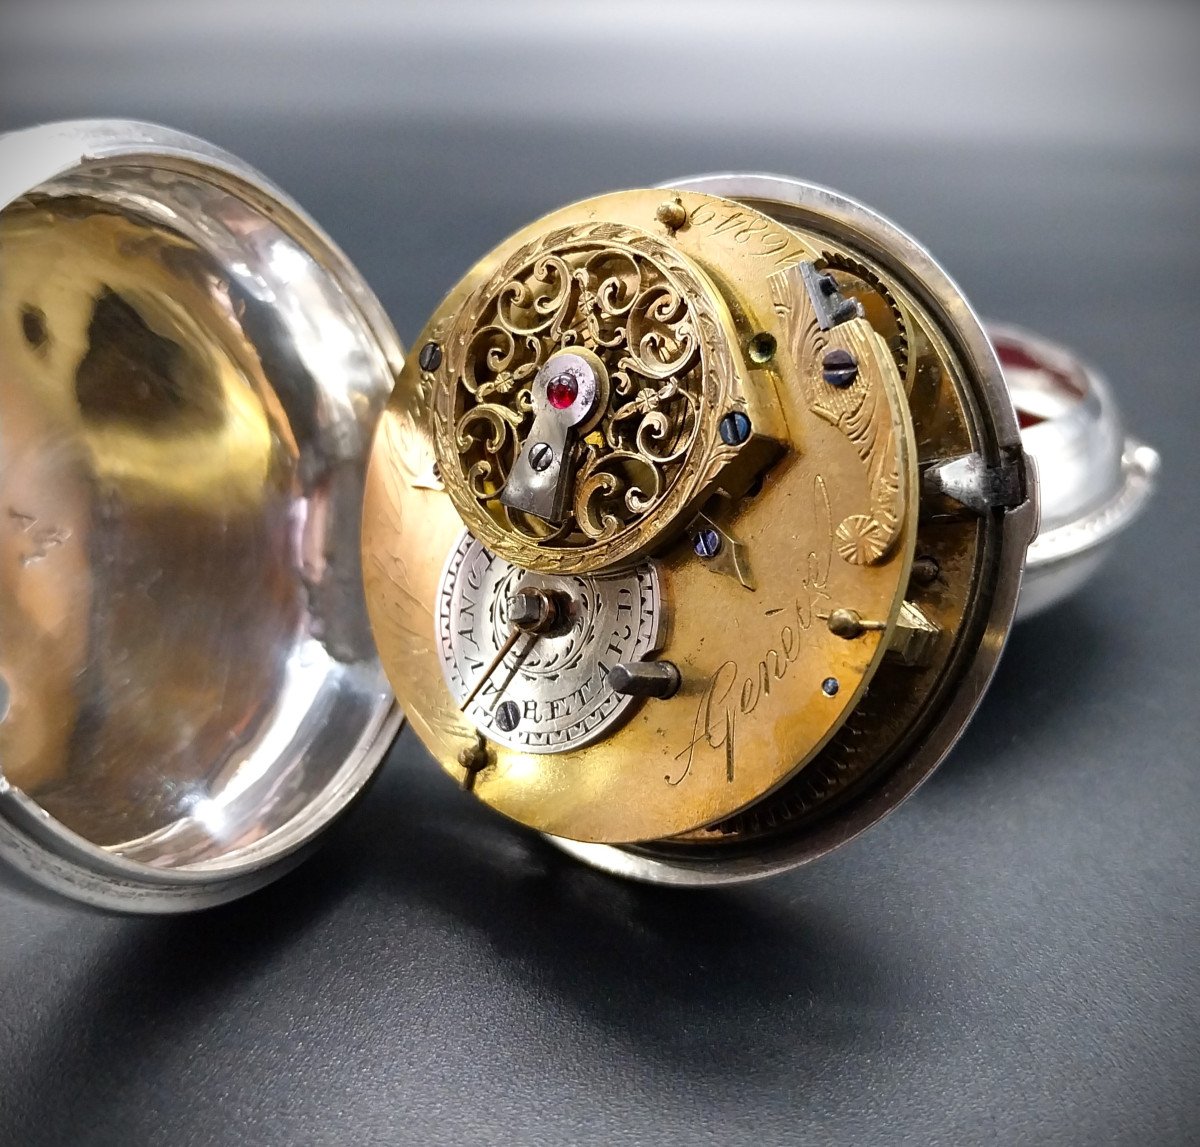 Orologio da tasca con scappamento a verga, firmato "Freres Wiss et Menu a Geneve", fine 700-photo-5